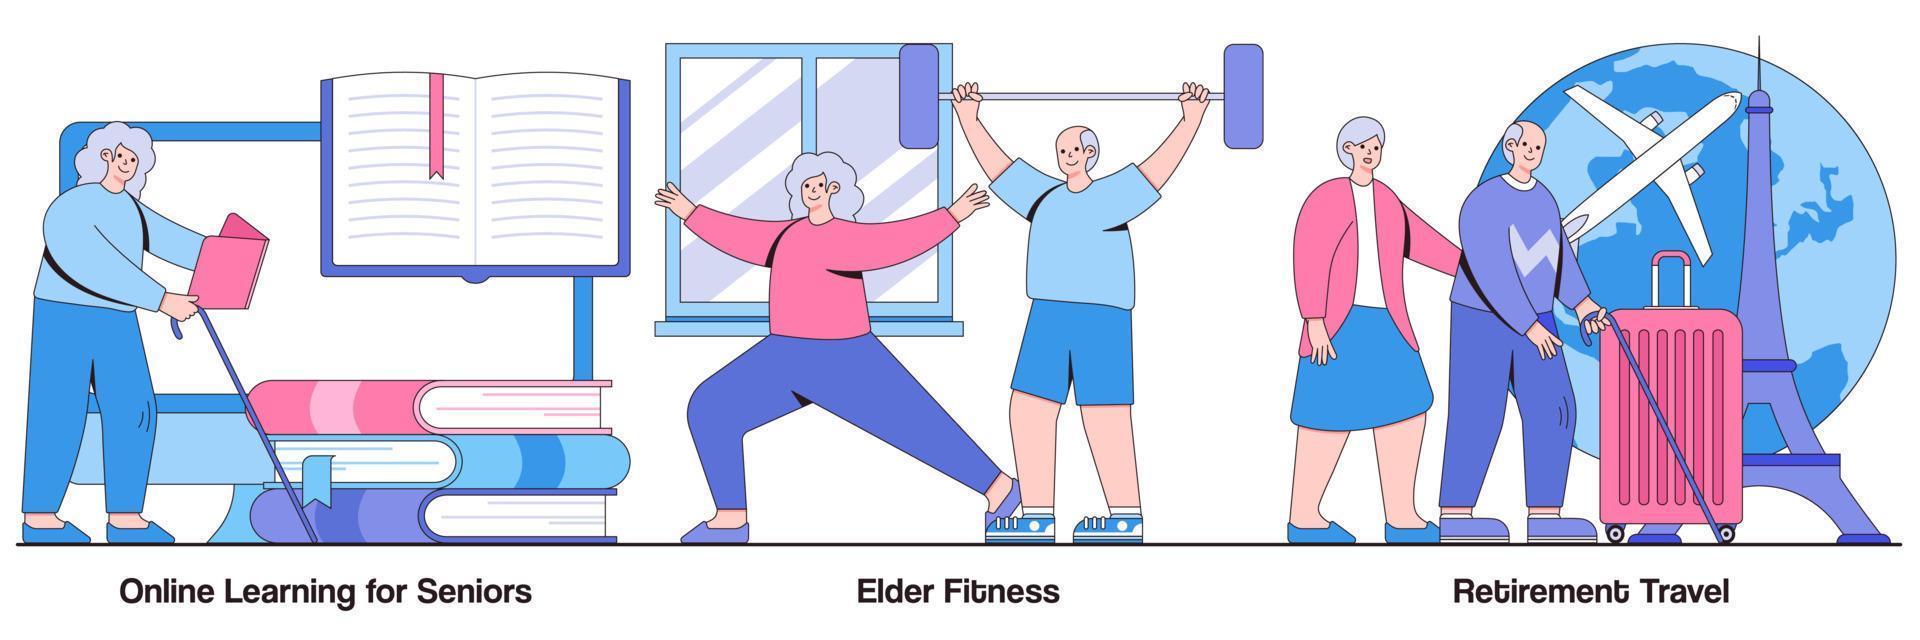 onlineinlärning för seniorer, äldre fitness, pensionsresor med människor karaktärer illustrationer pack vektor